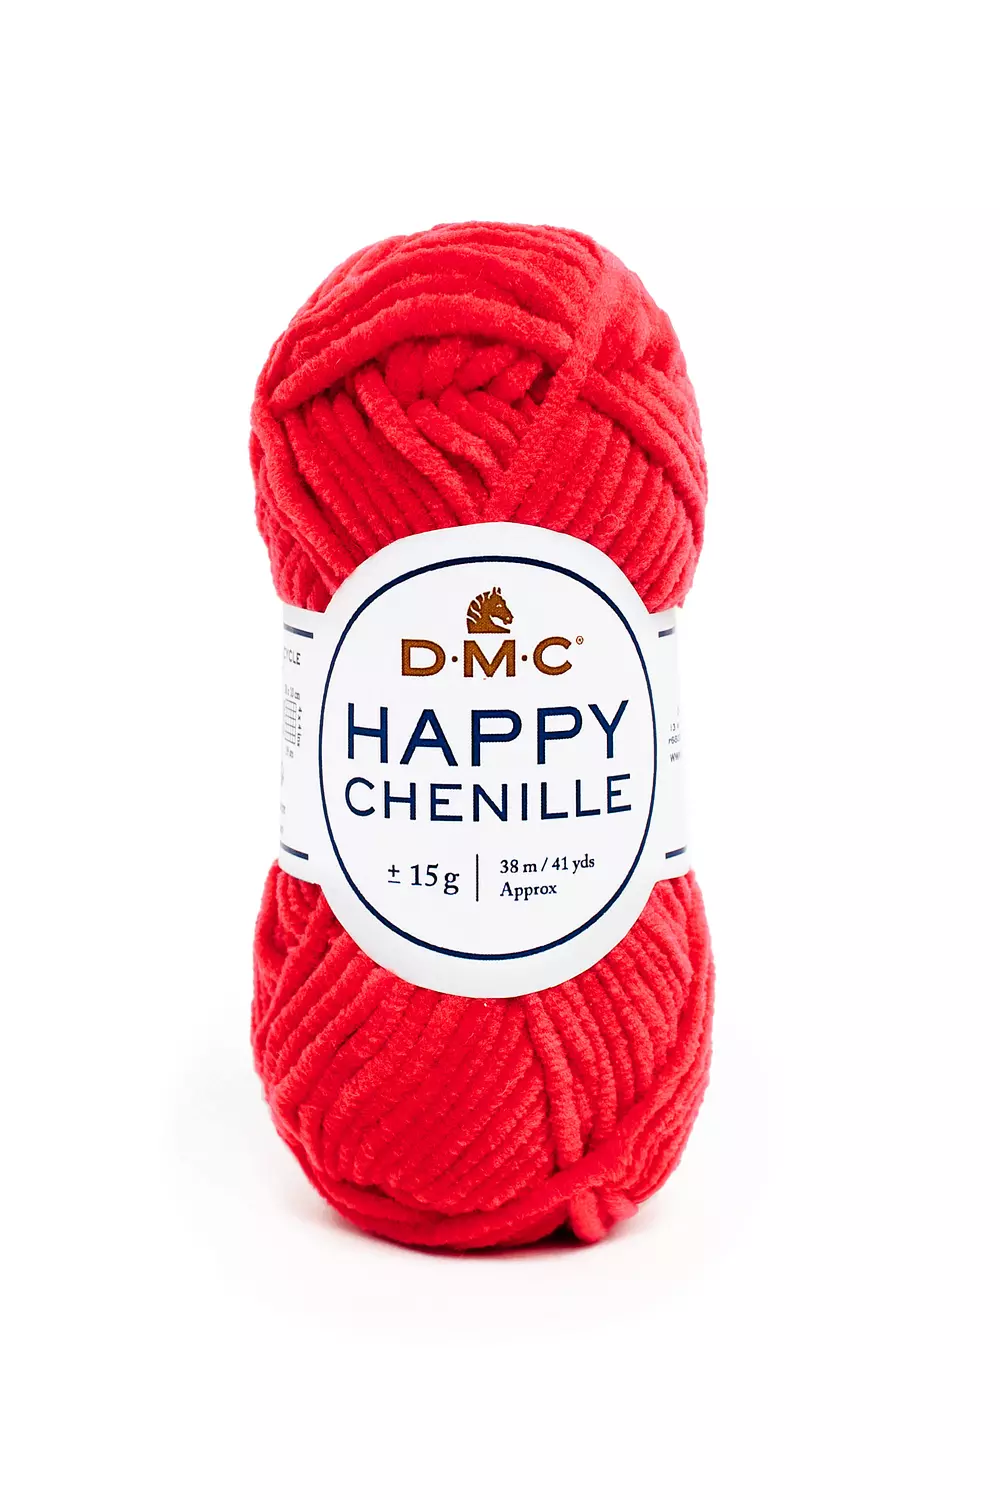 Buy DMC Happy Chenille Fluffy, Soft Crochet Yarn for Amigurumi, 15g  38m/41yd Online in India 